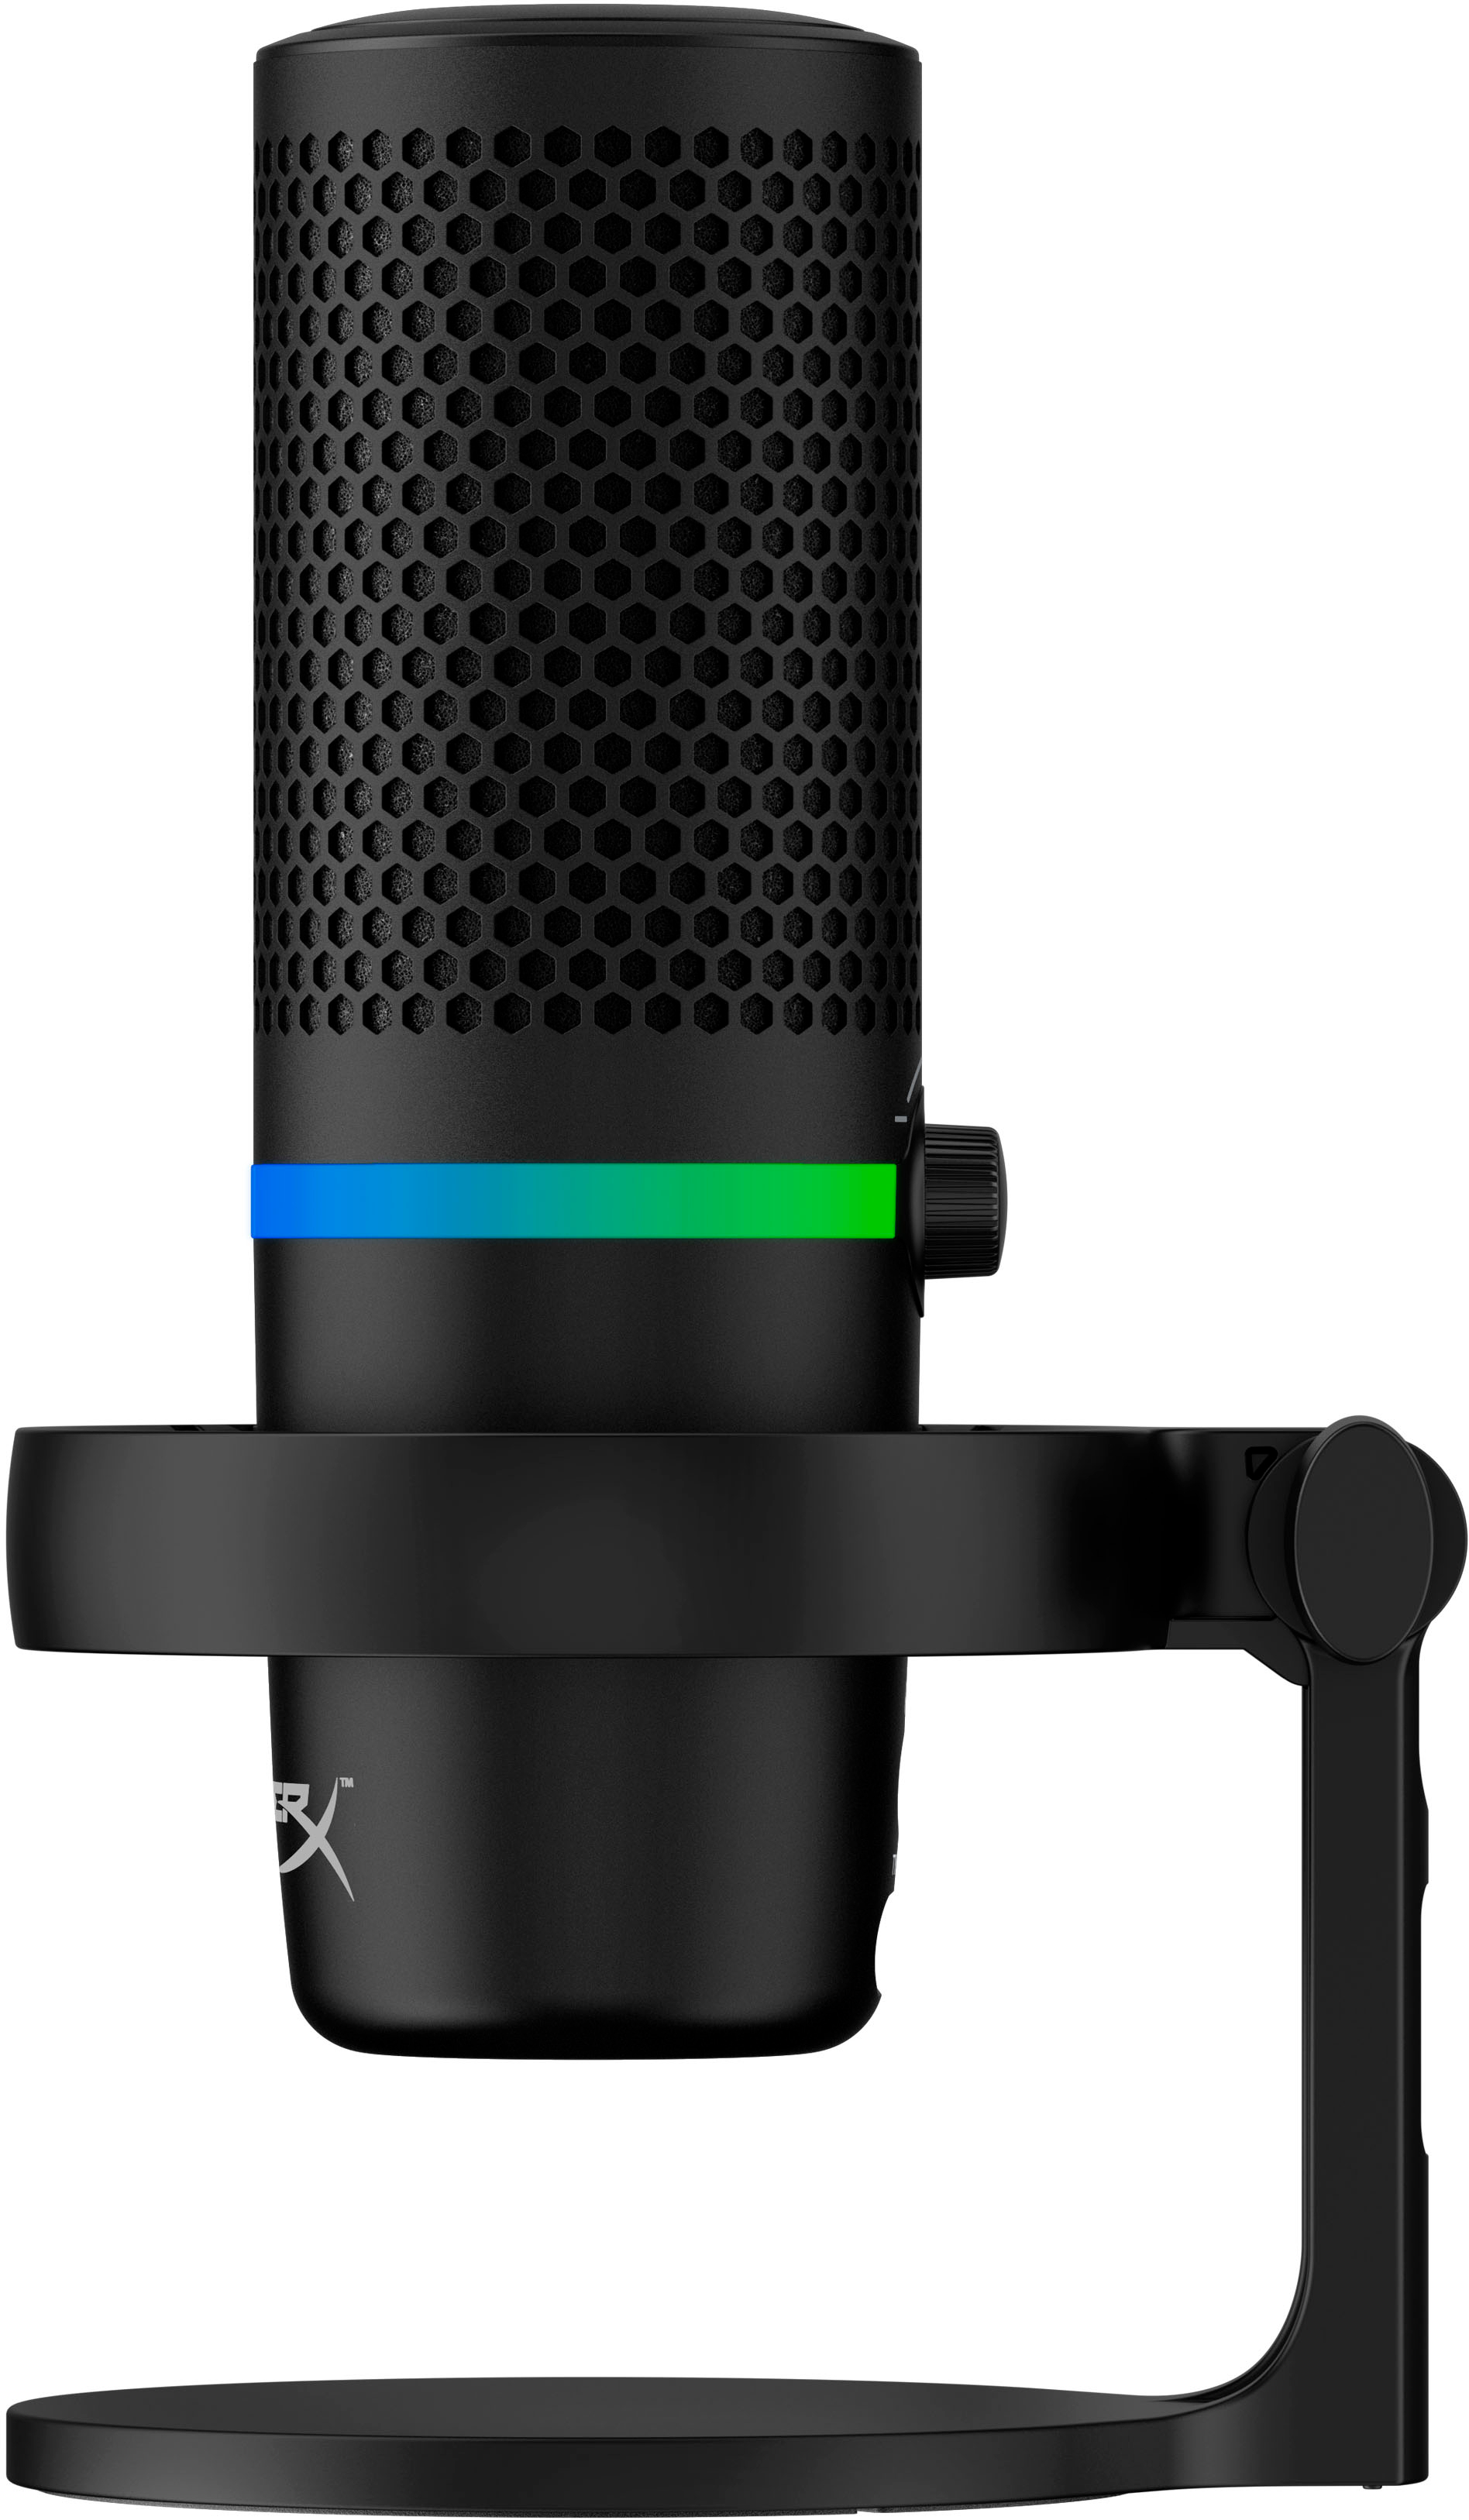 HyperX DuoCast Microphone Mount Adapter - Desk Cookies